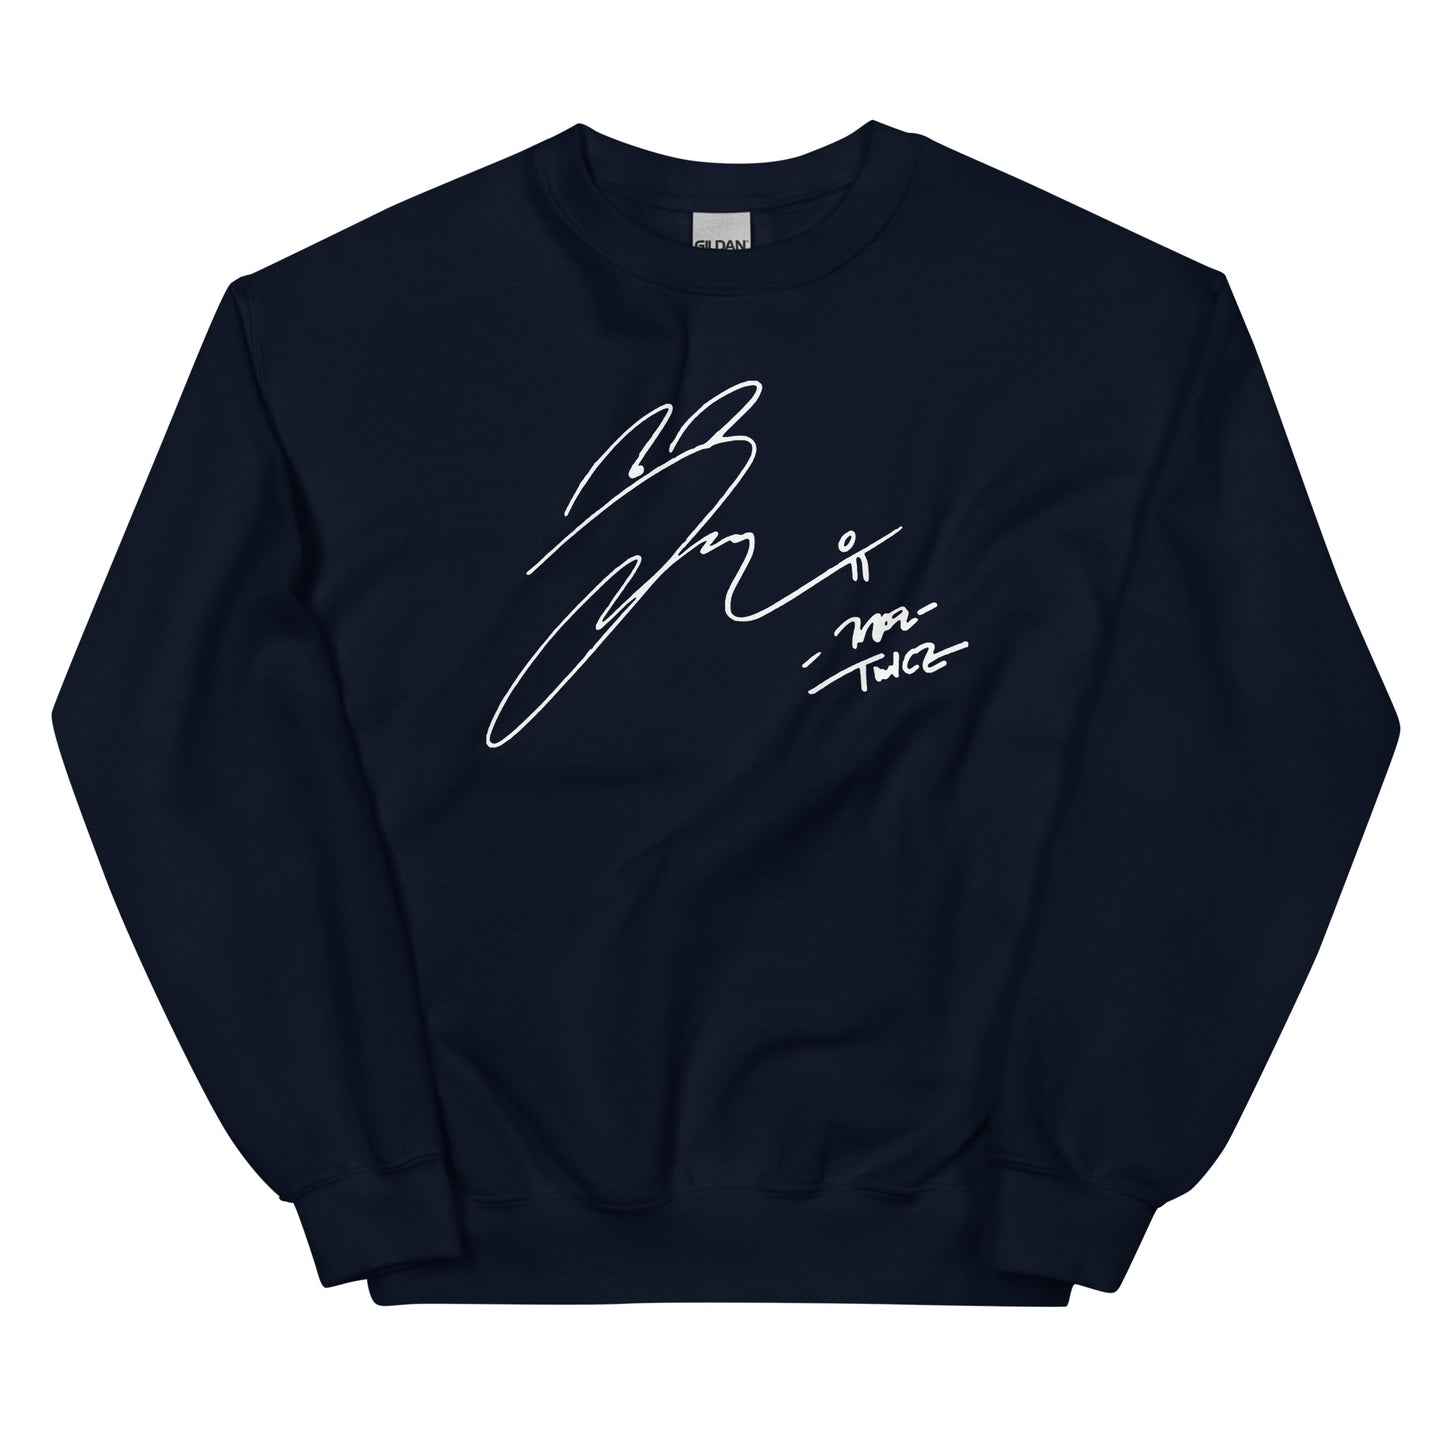 TWICE Jeongyeon, Yoo Jeong-yeon Autograph Unisex Sweatshirt